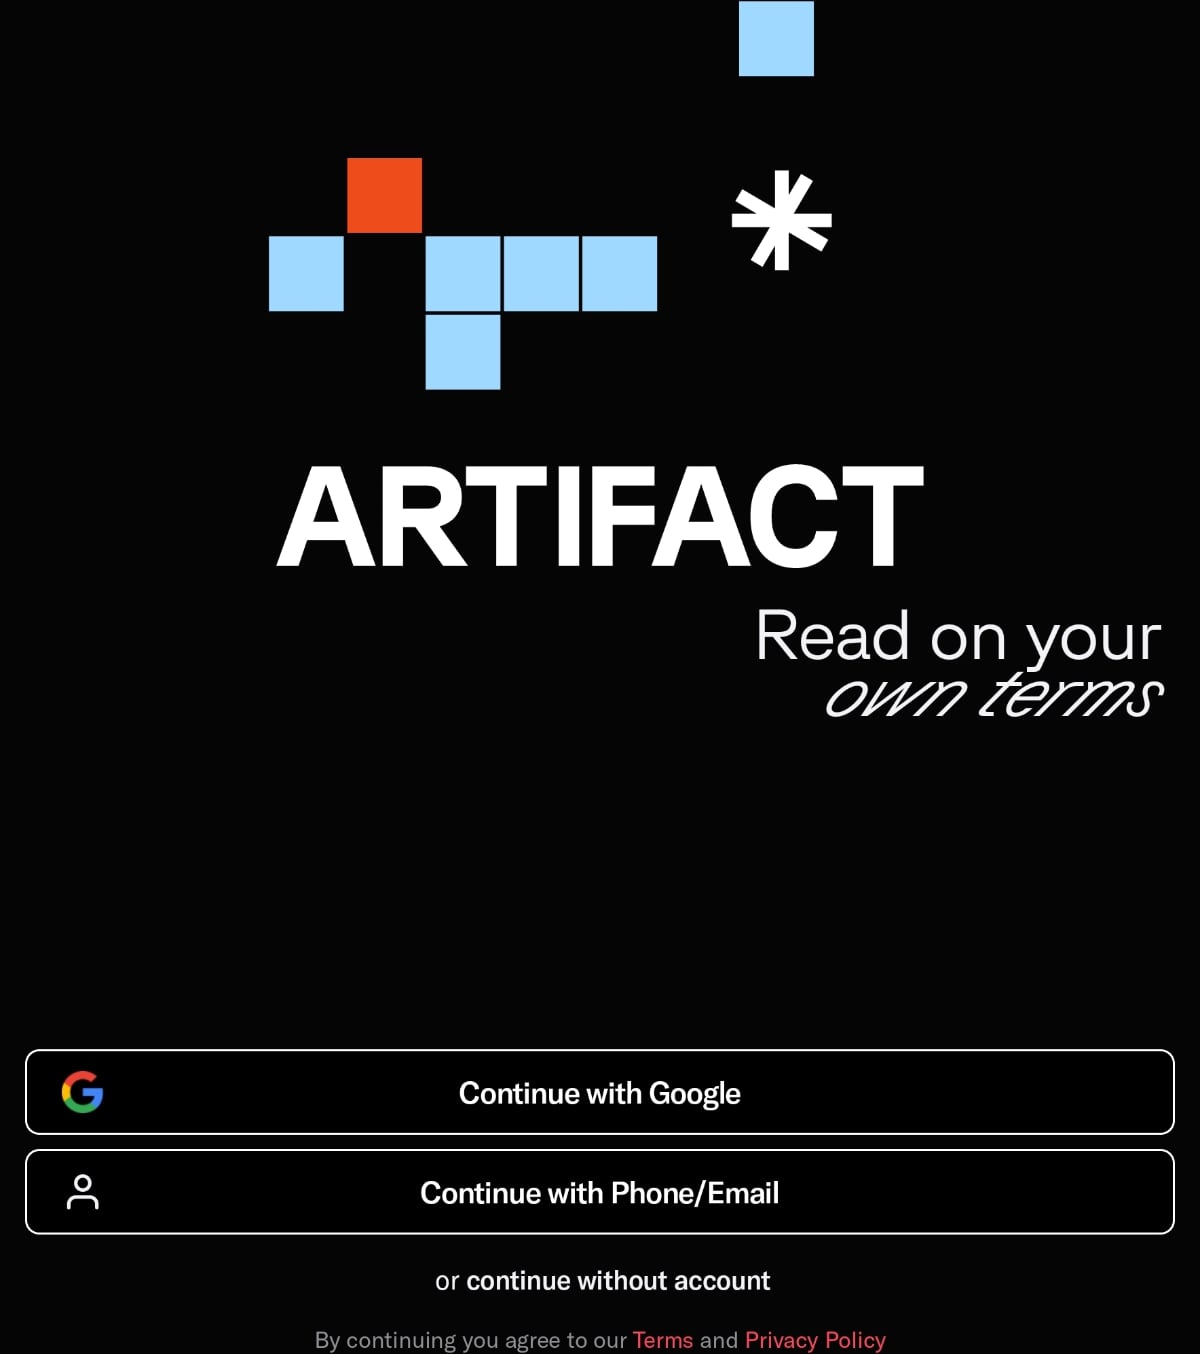 インスタ創業者が作ったニュースアプリ「Artifact」、AIのおすすめが的確すぎて驚いた